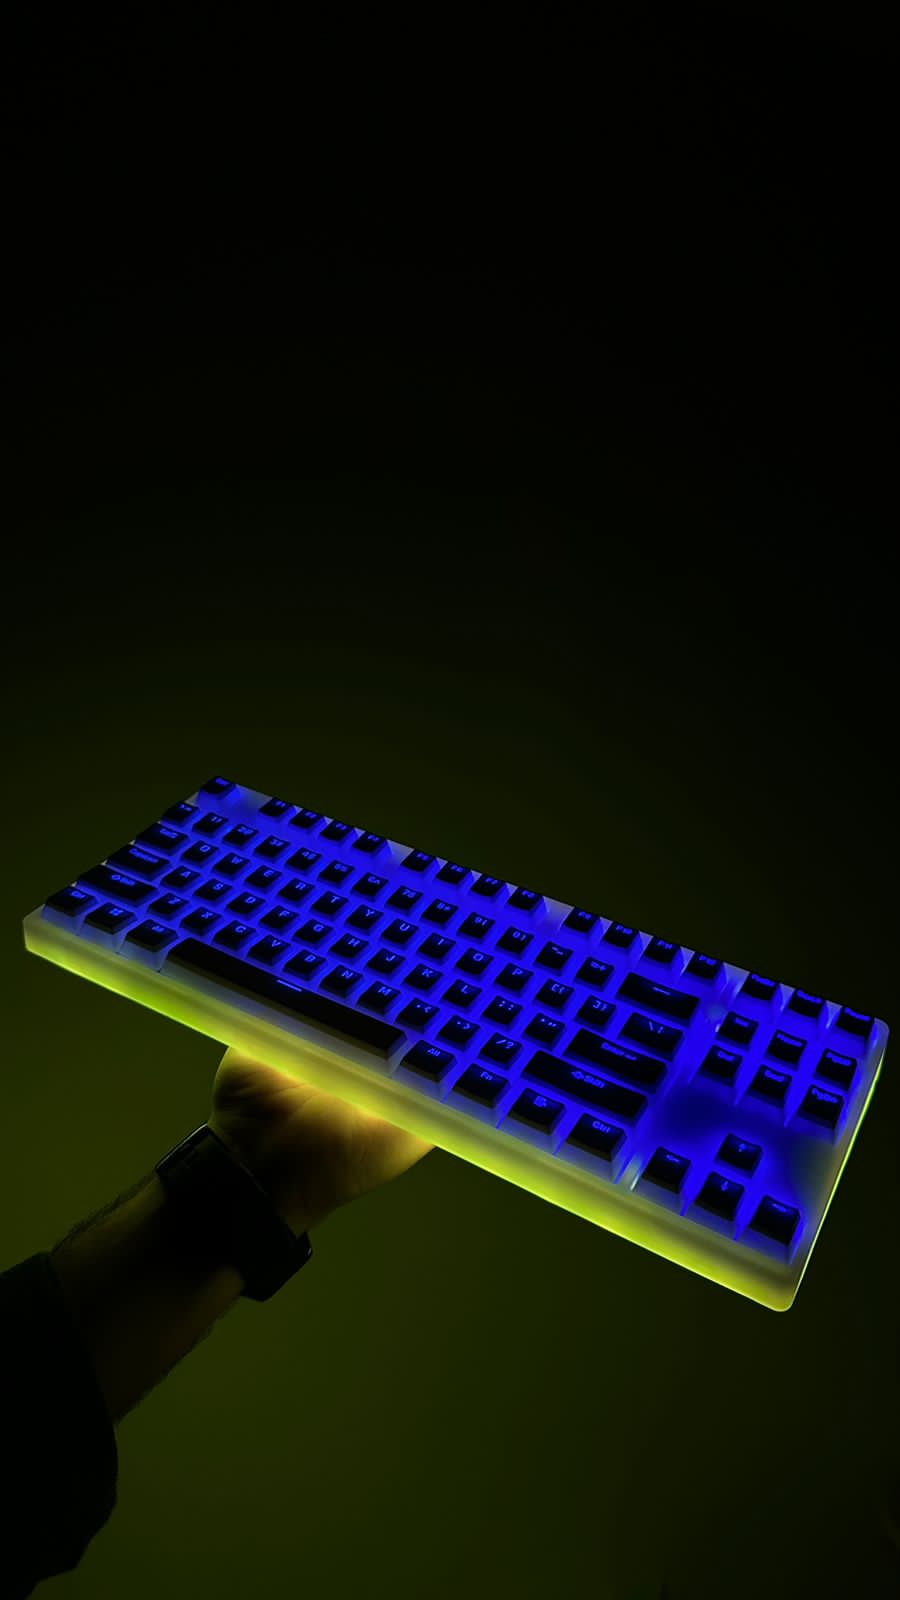 مجموعة لوحة المفاتيح اللاسلكية GK S3087 Full RGB + مجموعة Lubing